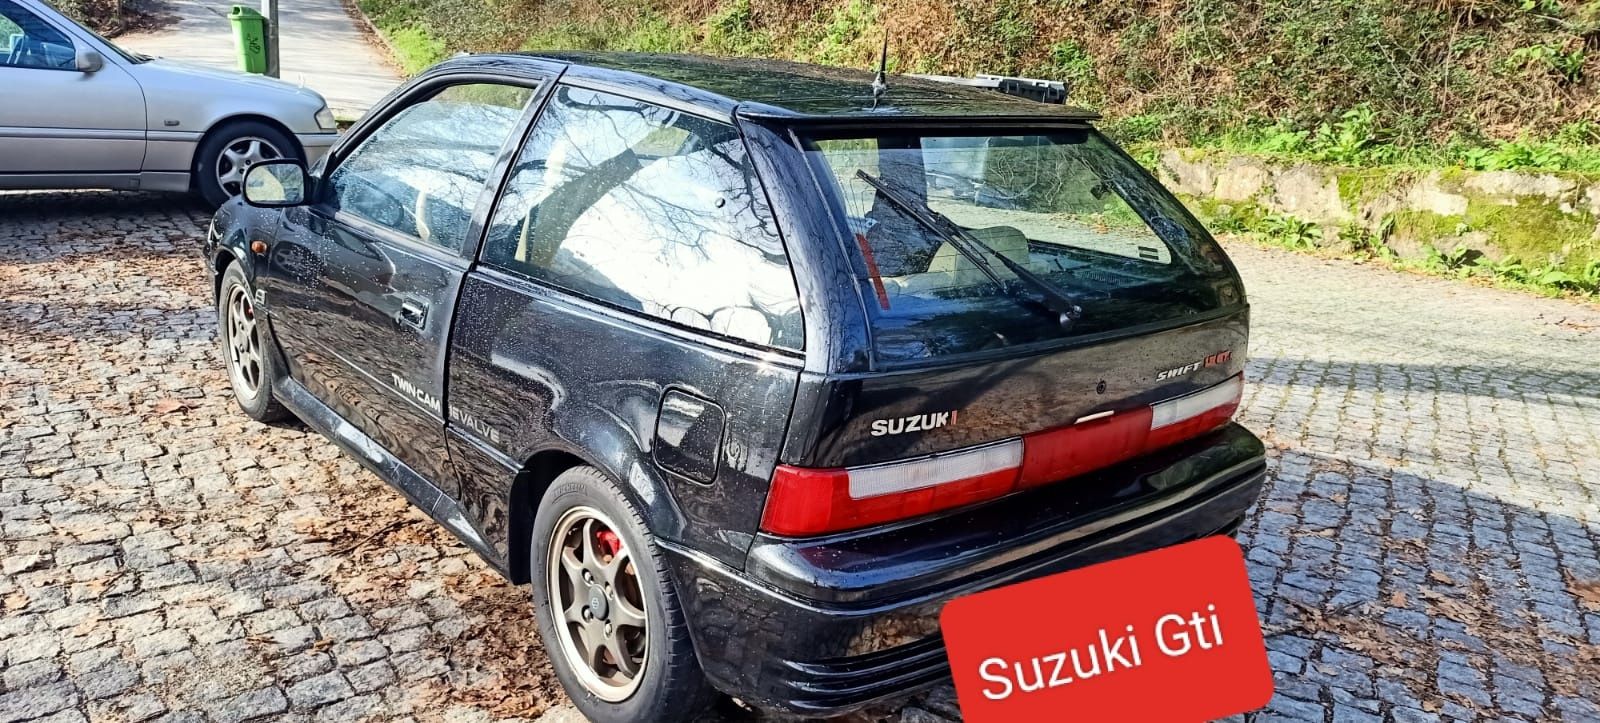 Suzuki Swift Gti